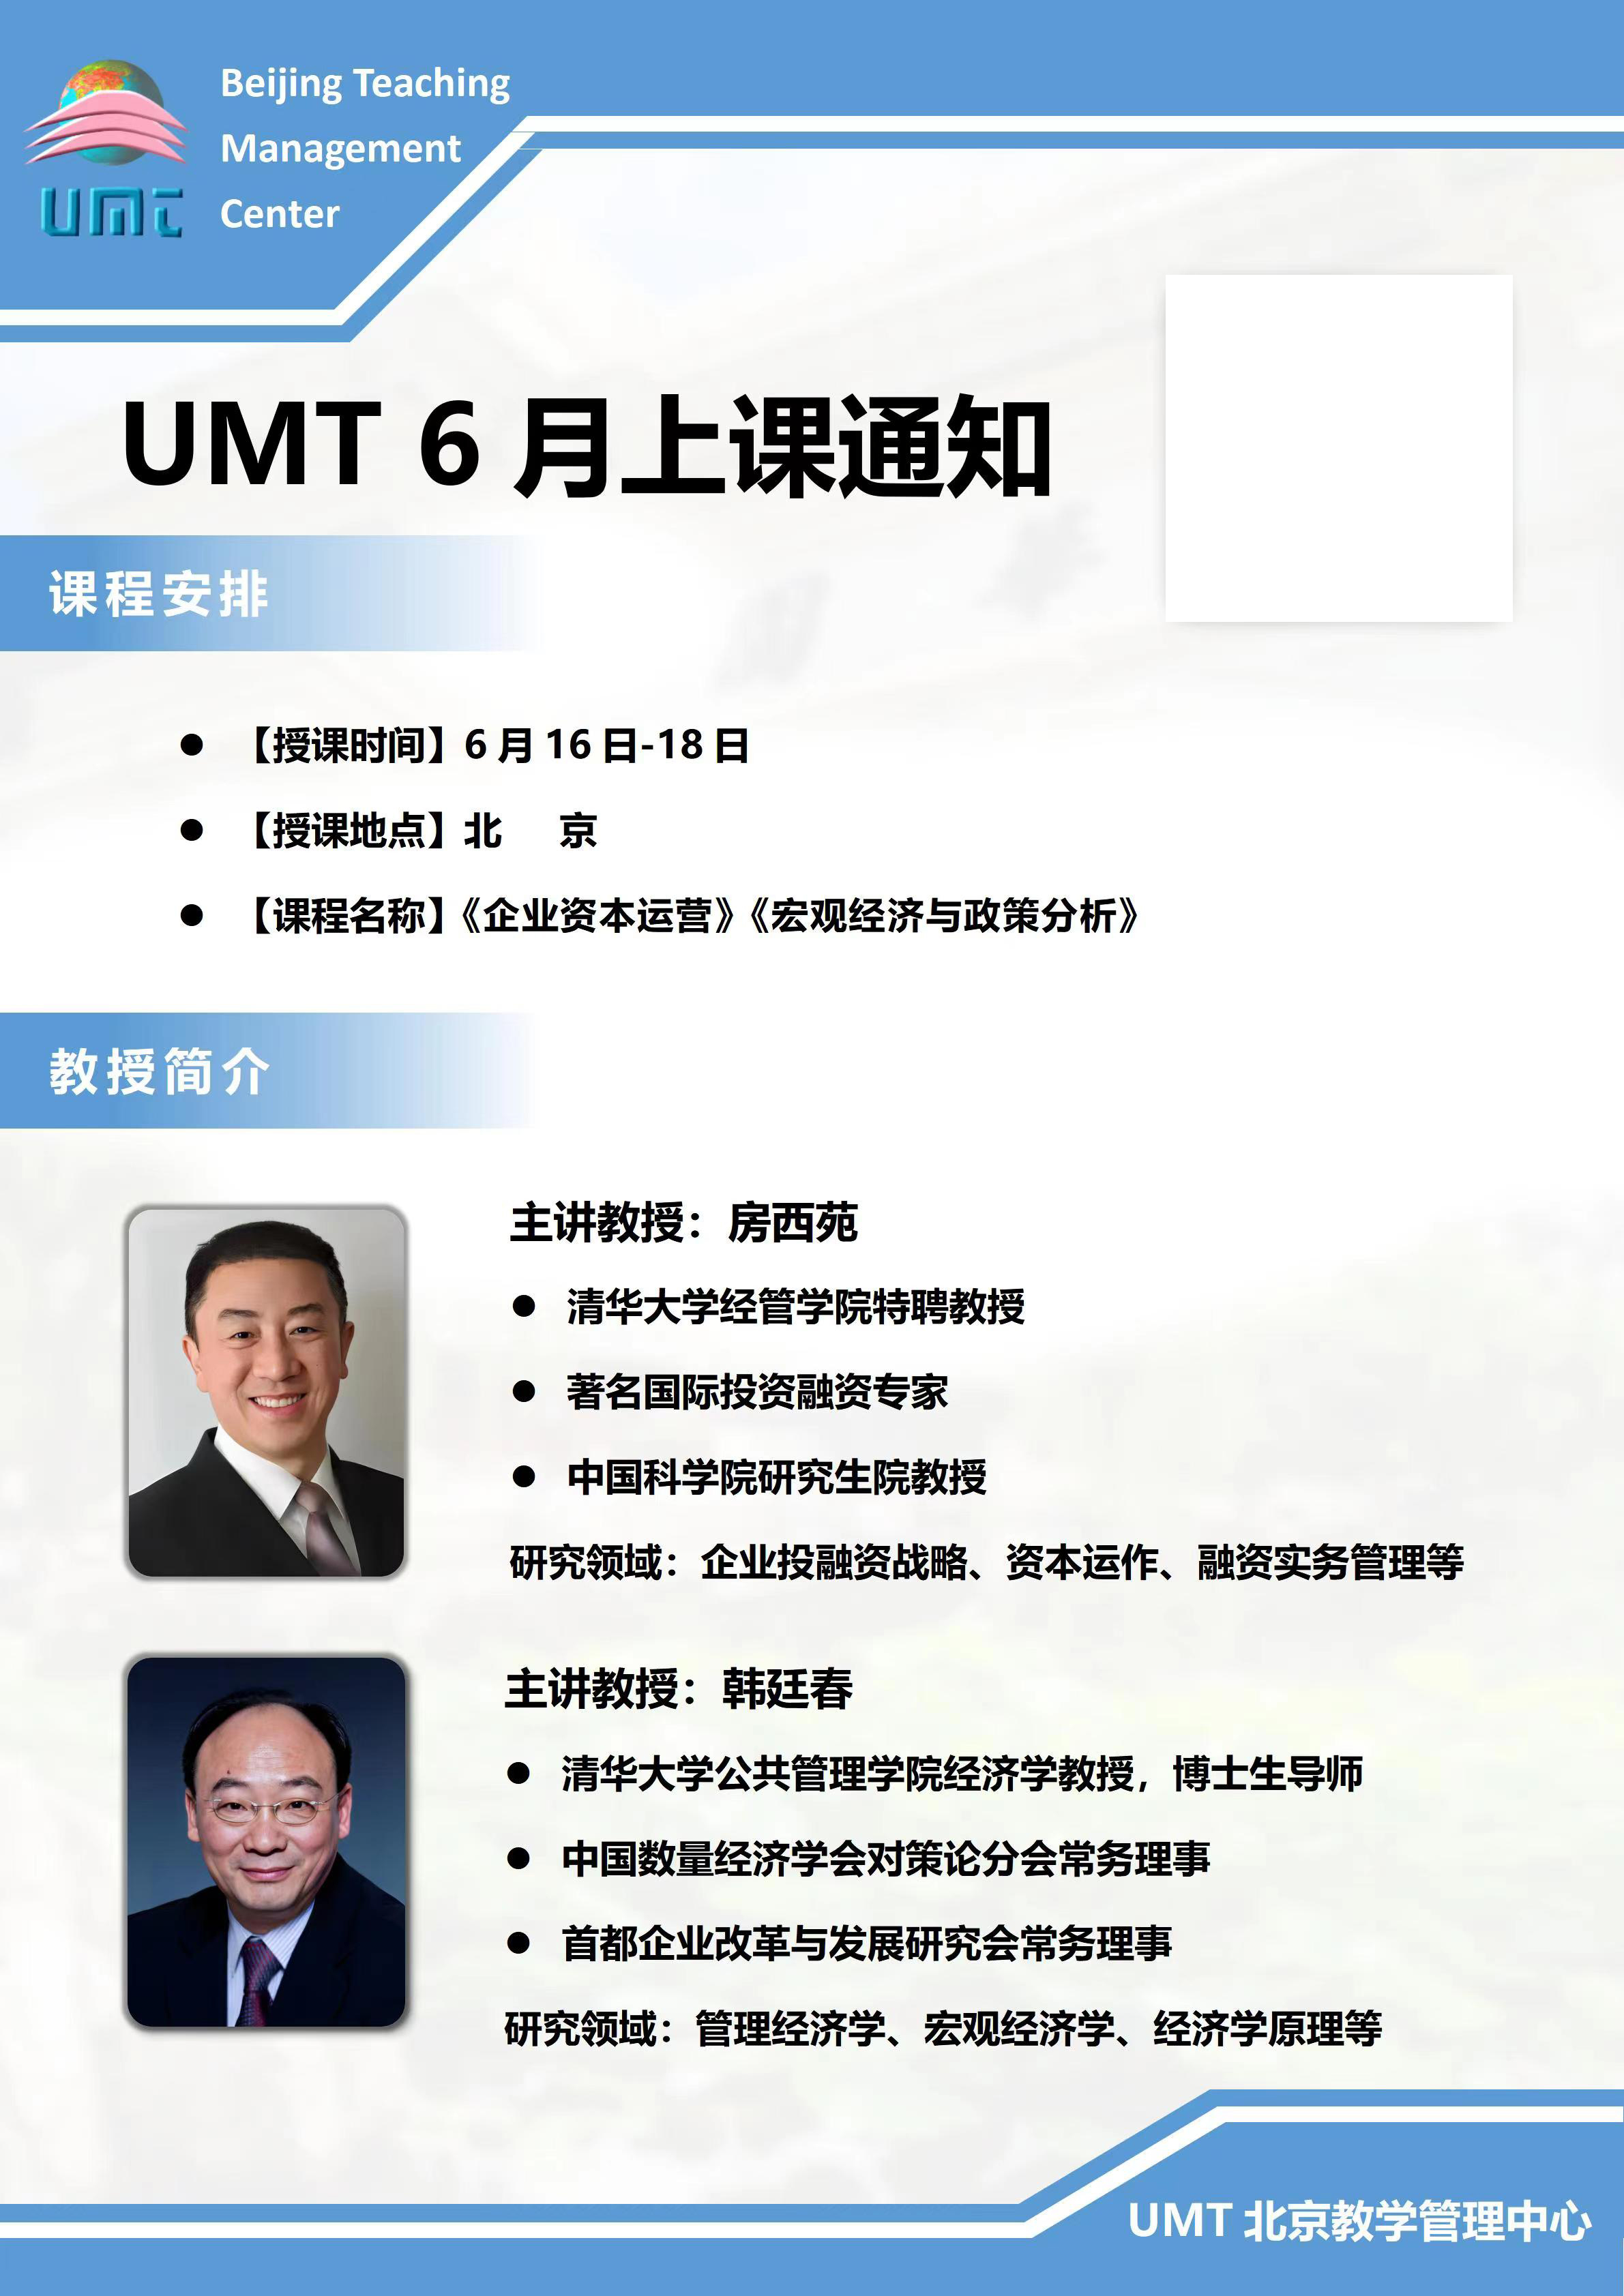 清华UMT 清华大学UMT 国外学位班 美国管理技术大学MBA 国外MBA课程